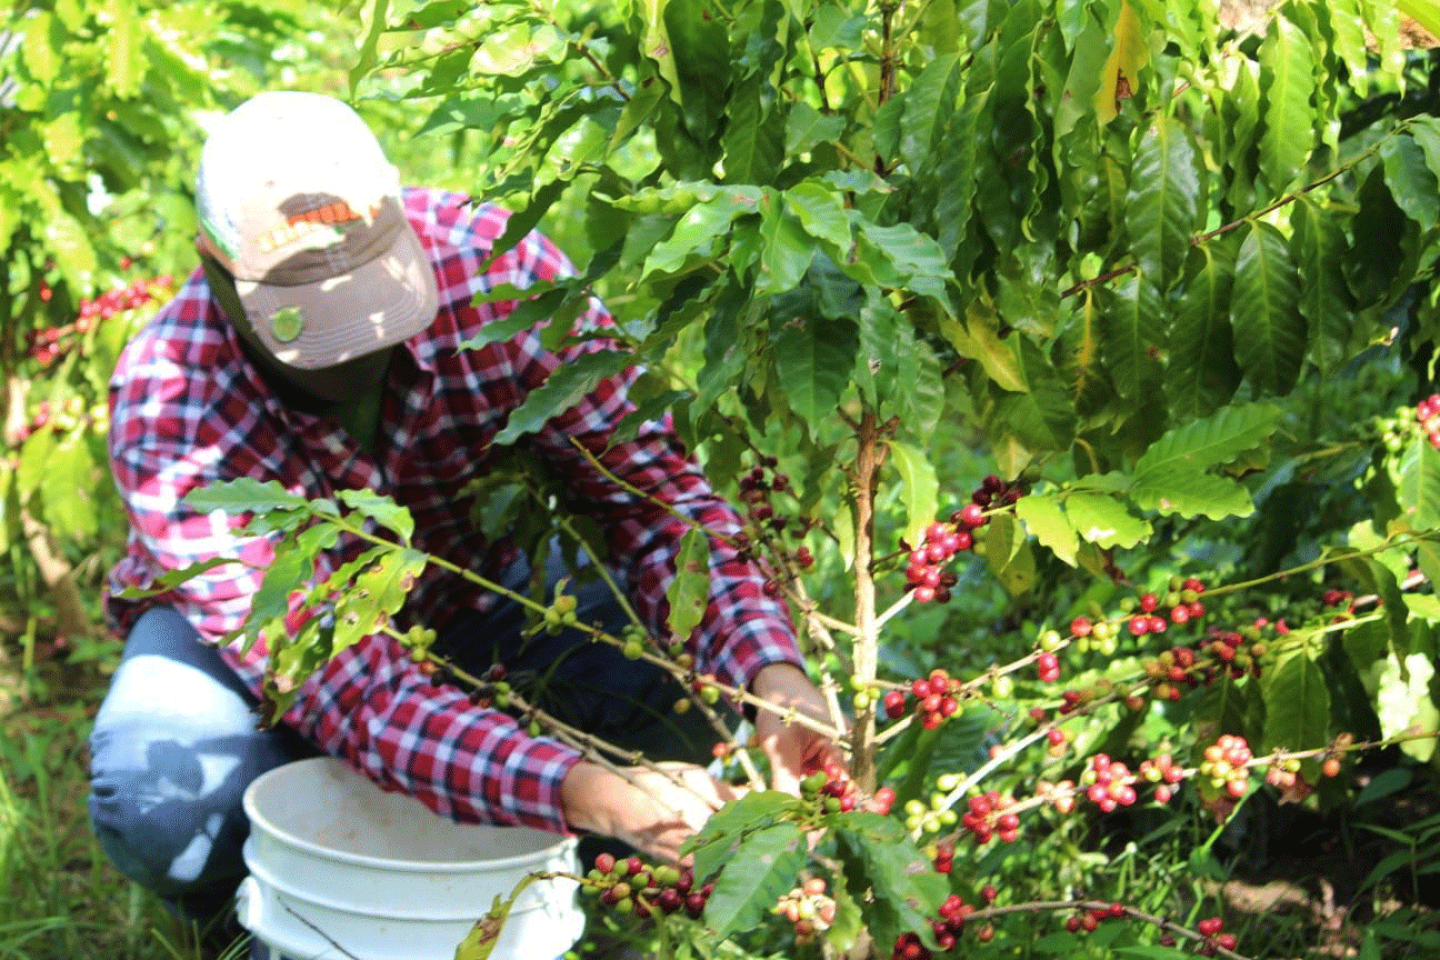 Samuel Rios harvests coffee berries at Hacienda Prosperidad in Jayuya, PR.